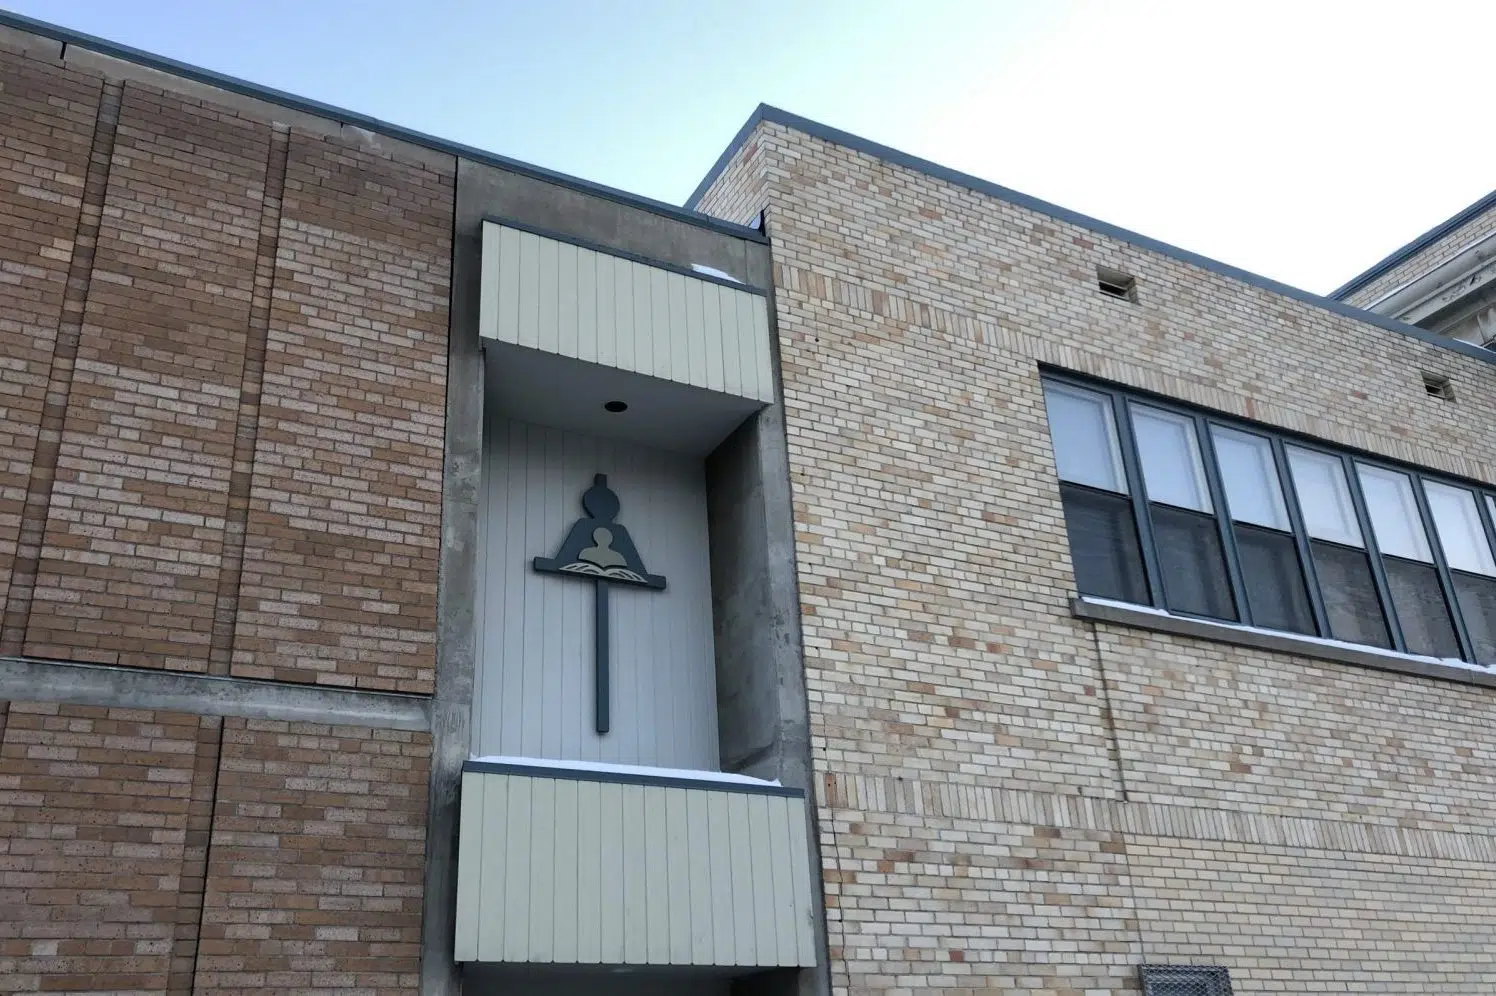 Laid-off carpenter raises concerns about management within Regina Catholic Schools